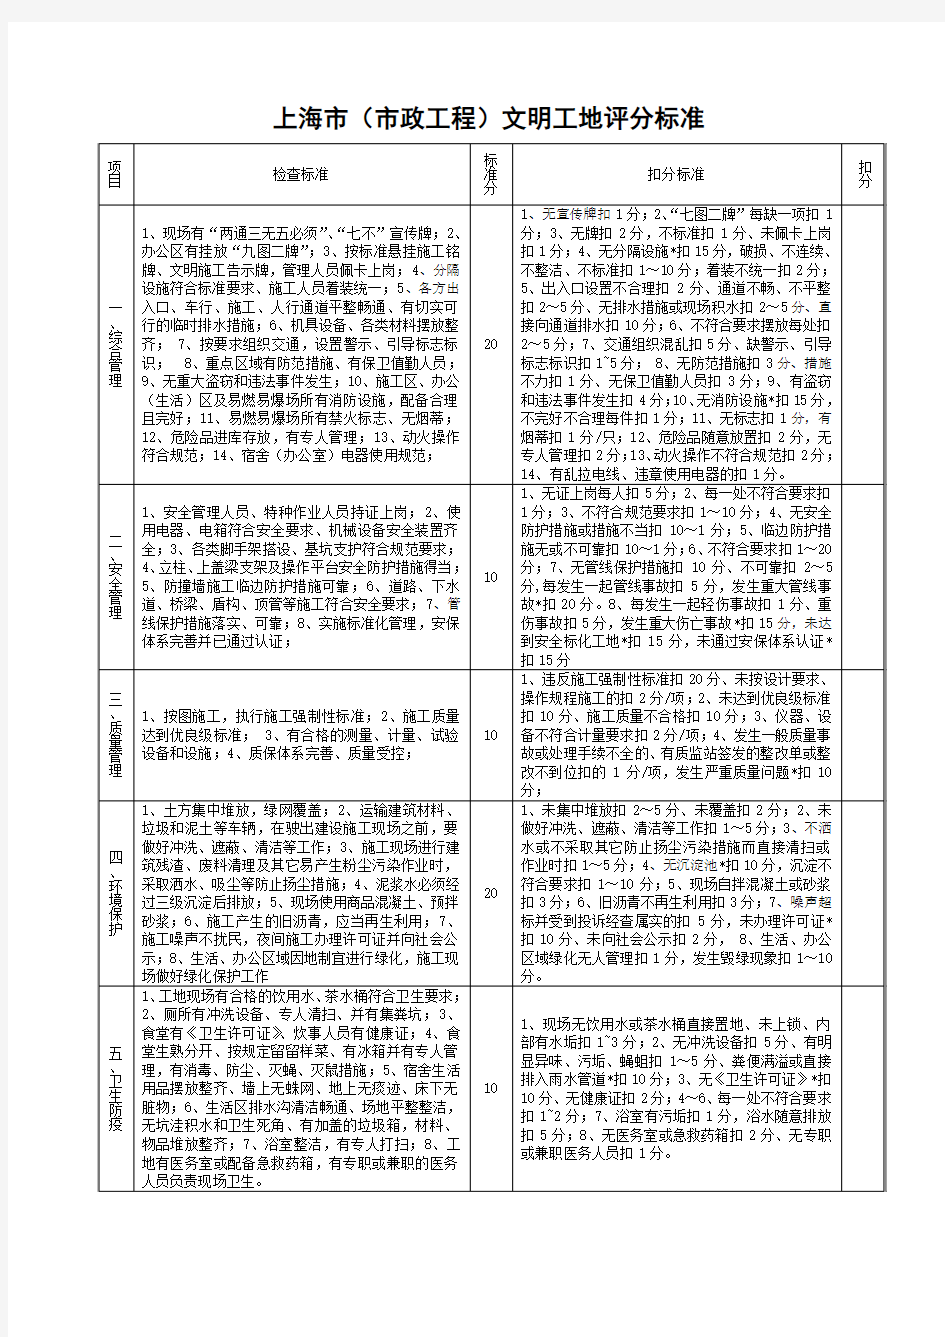 上海市文明工地评分标准